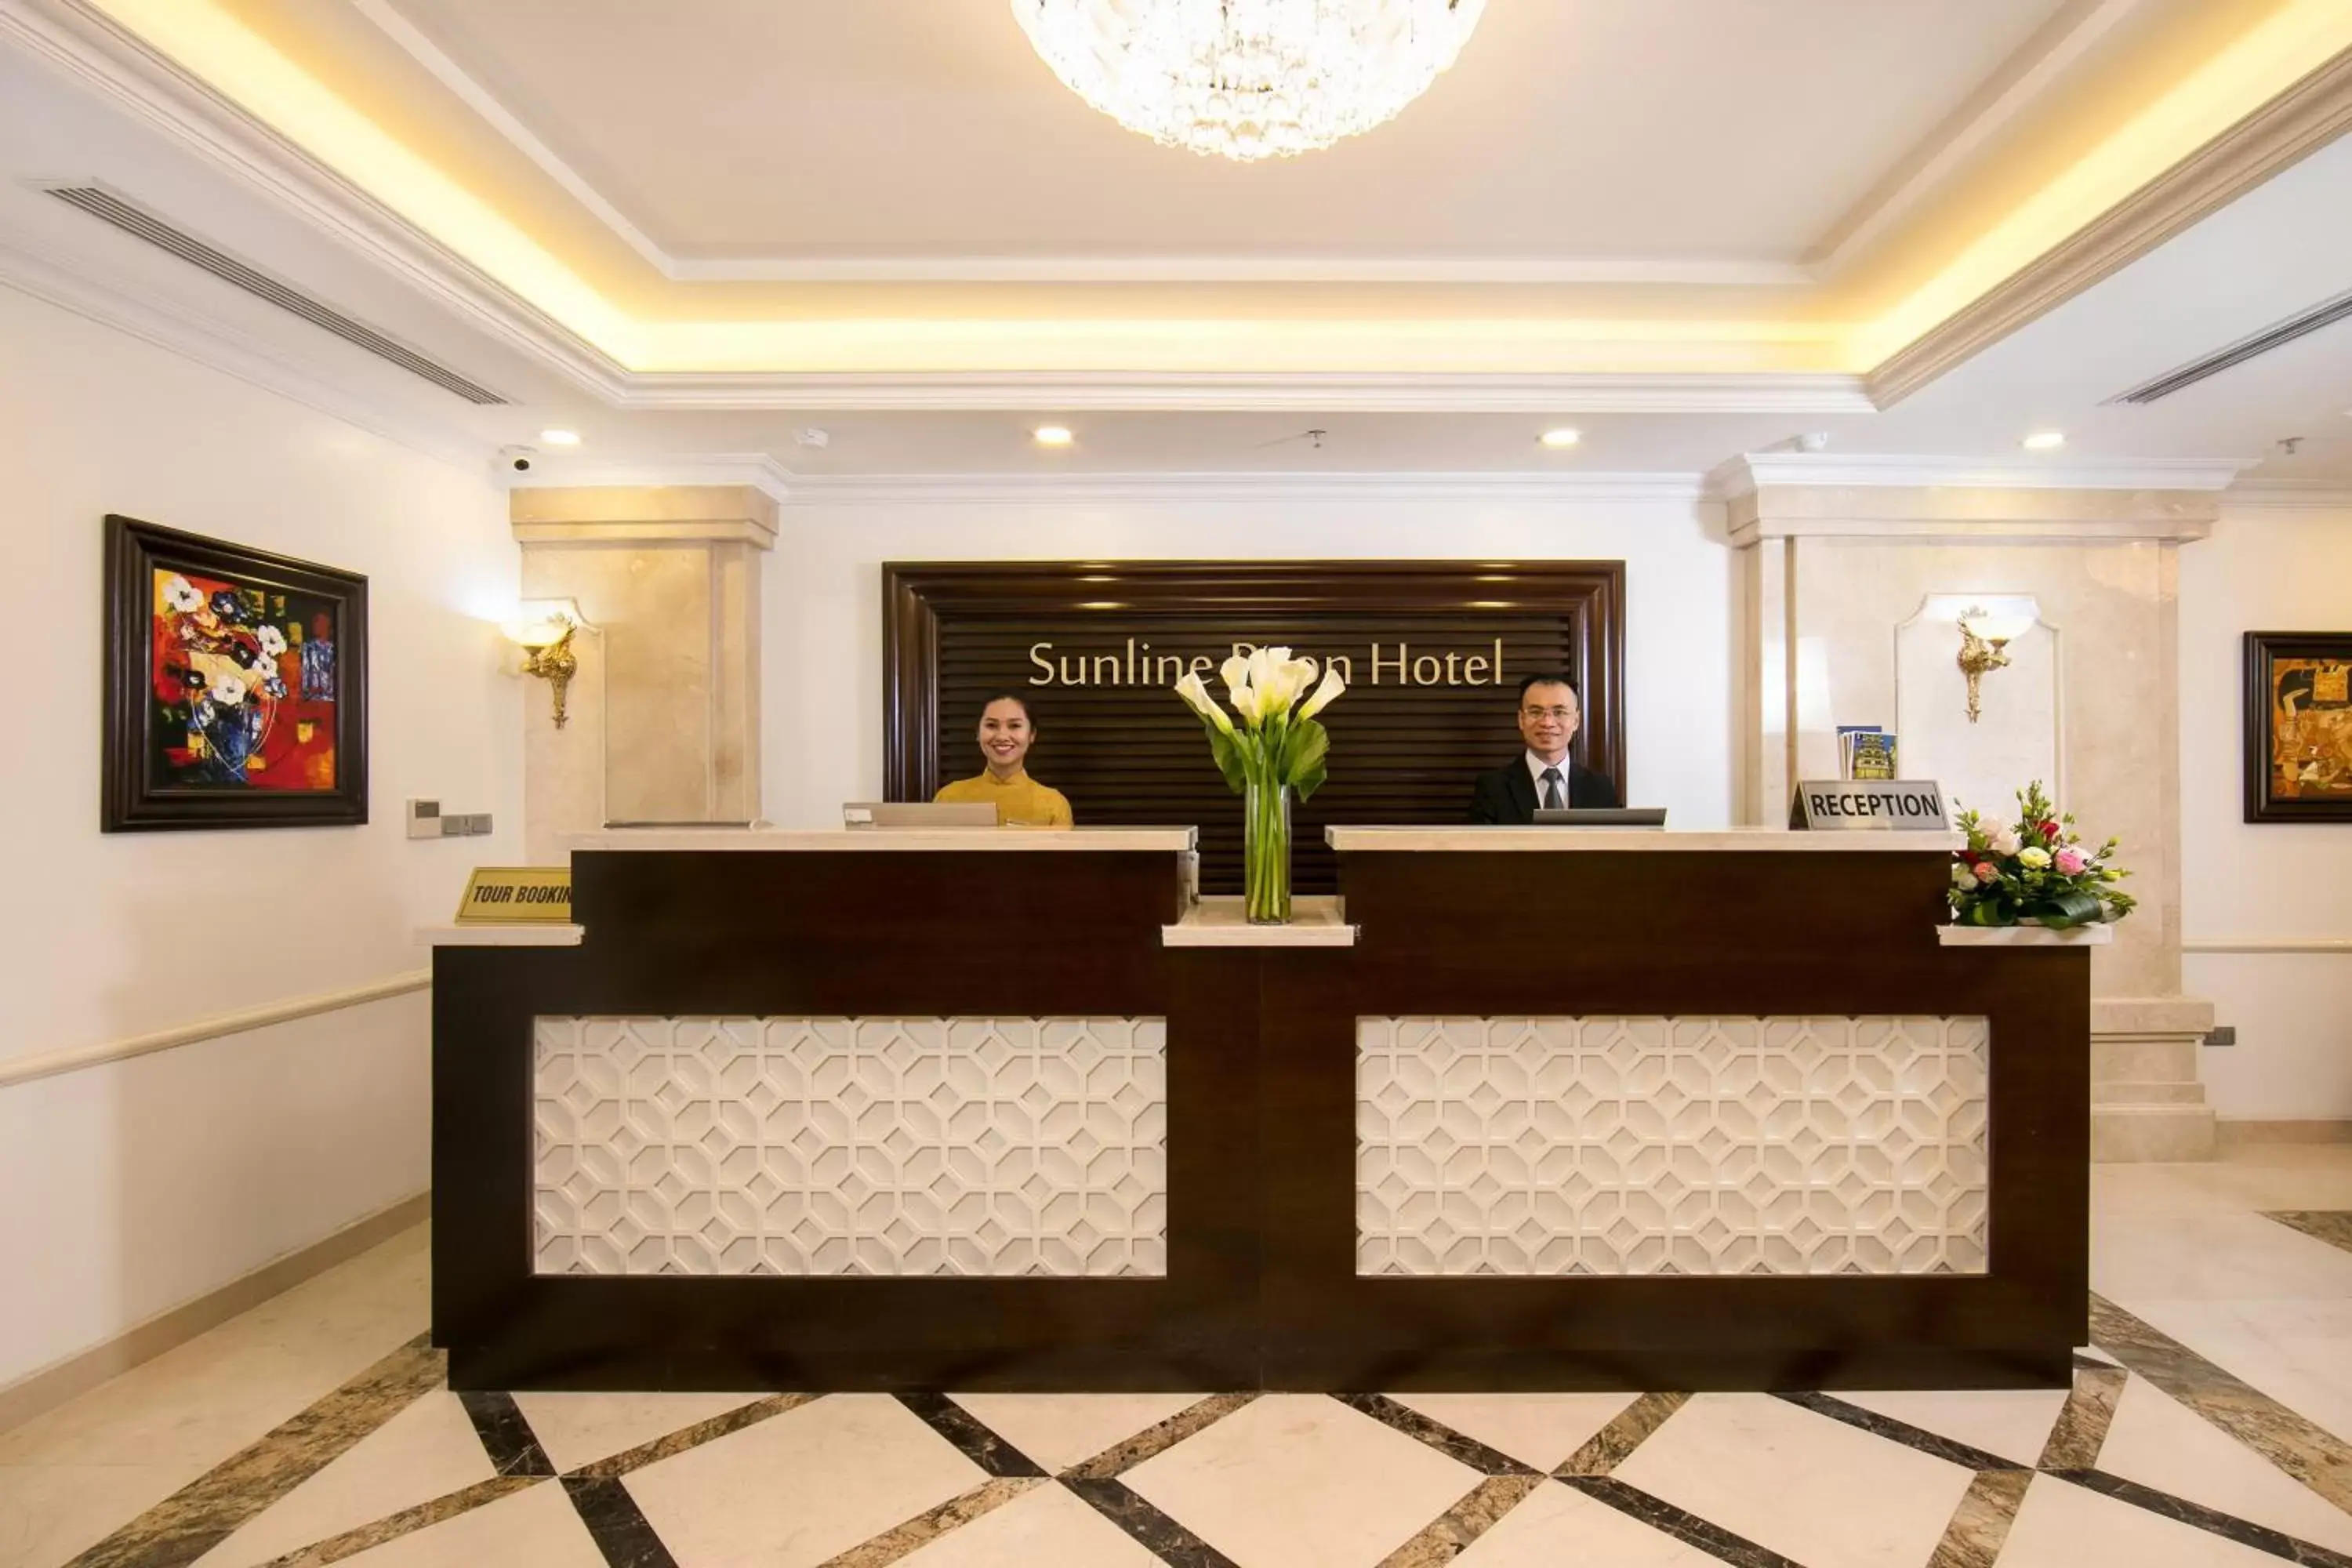 Lobby or reception, Lobby/Reception in Hanoi Paon Hotel & Spa